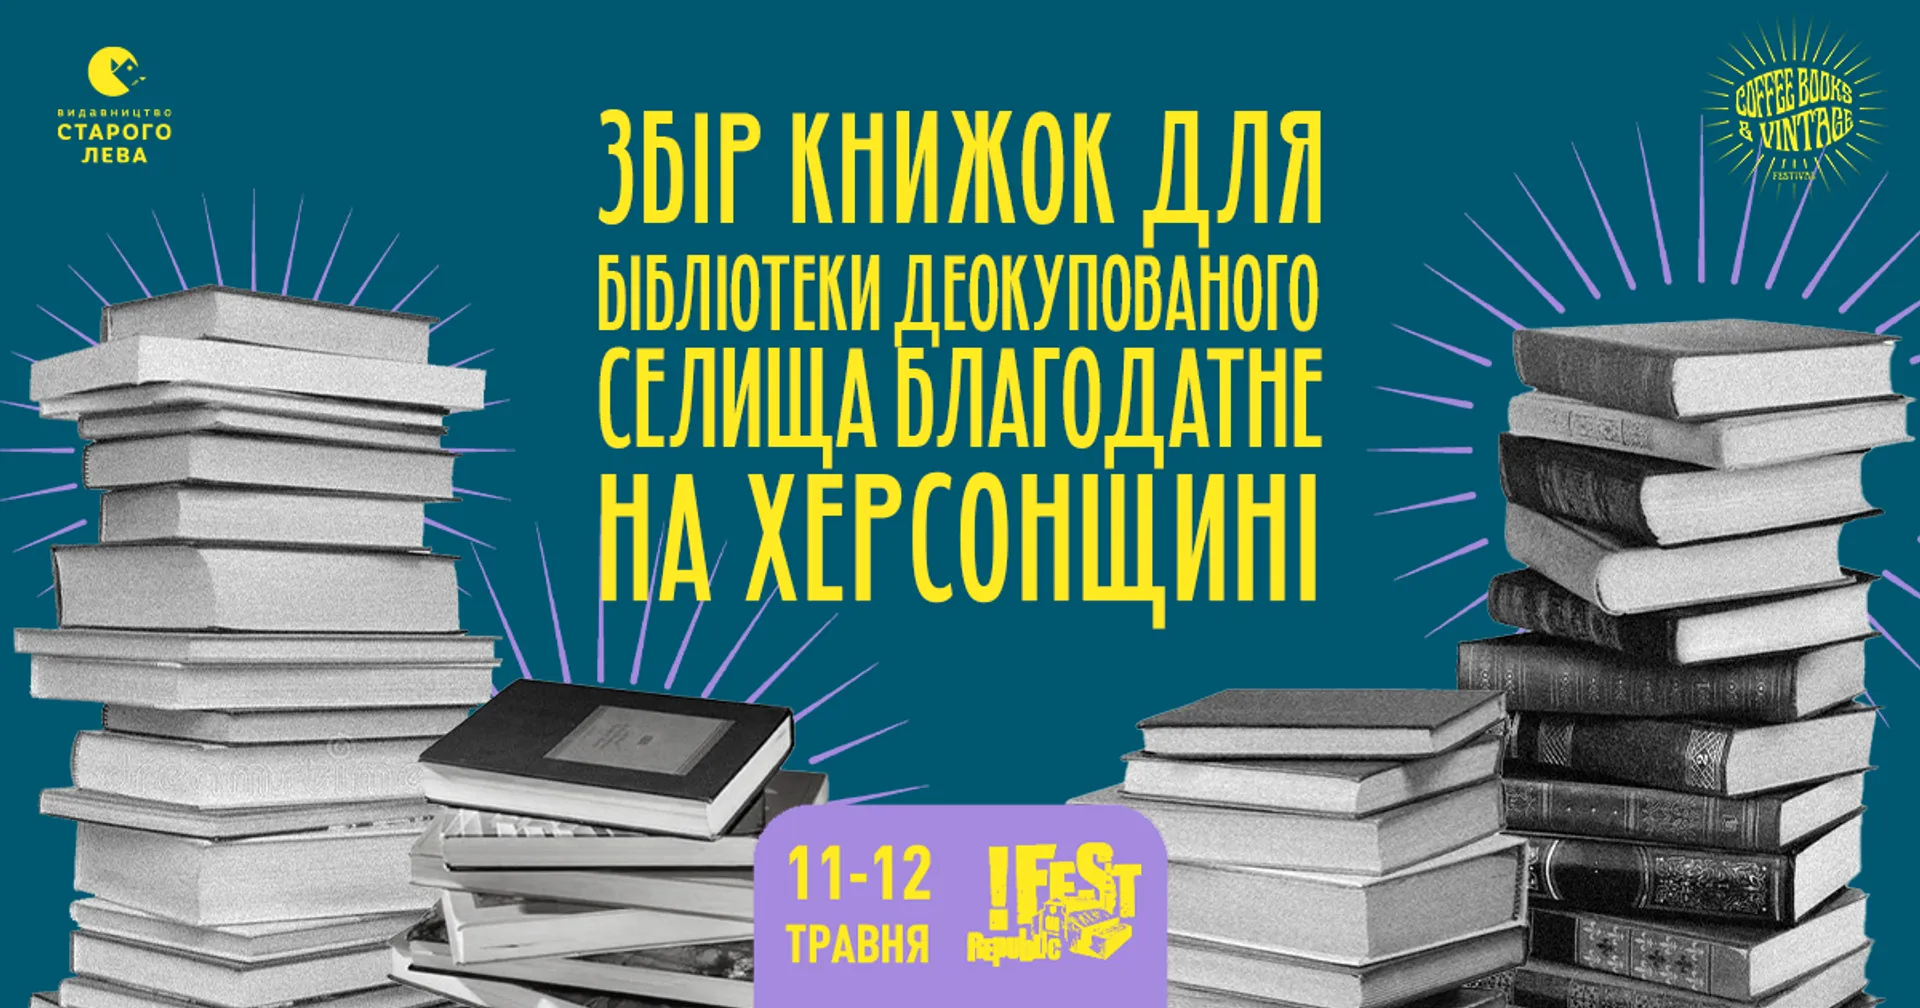 Збір книжок для бібліотеки села Благодатне Херсонської області